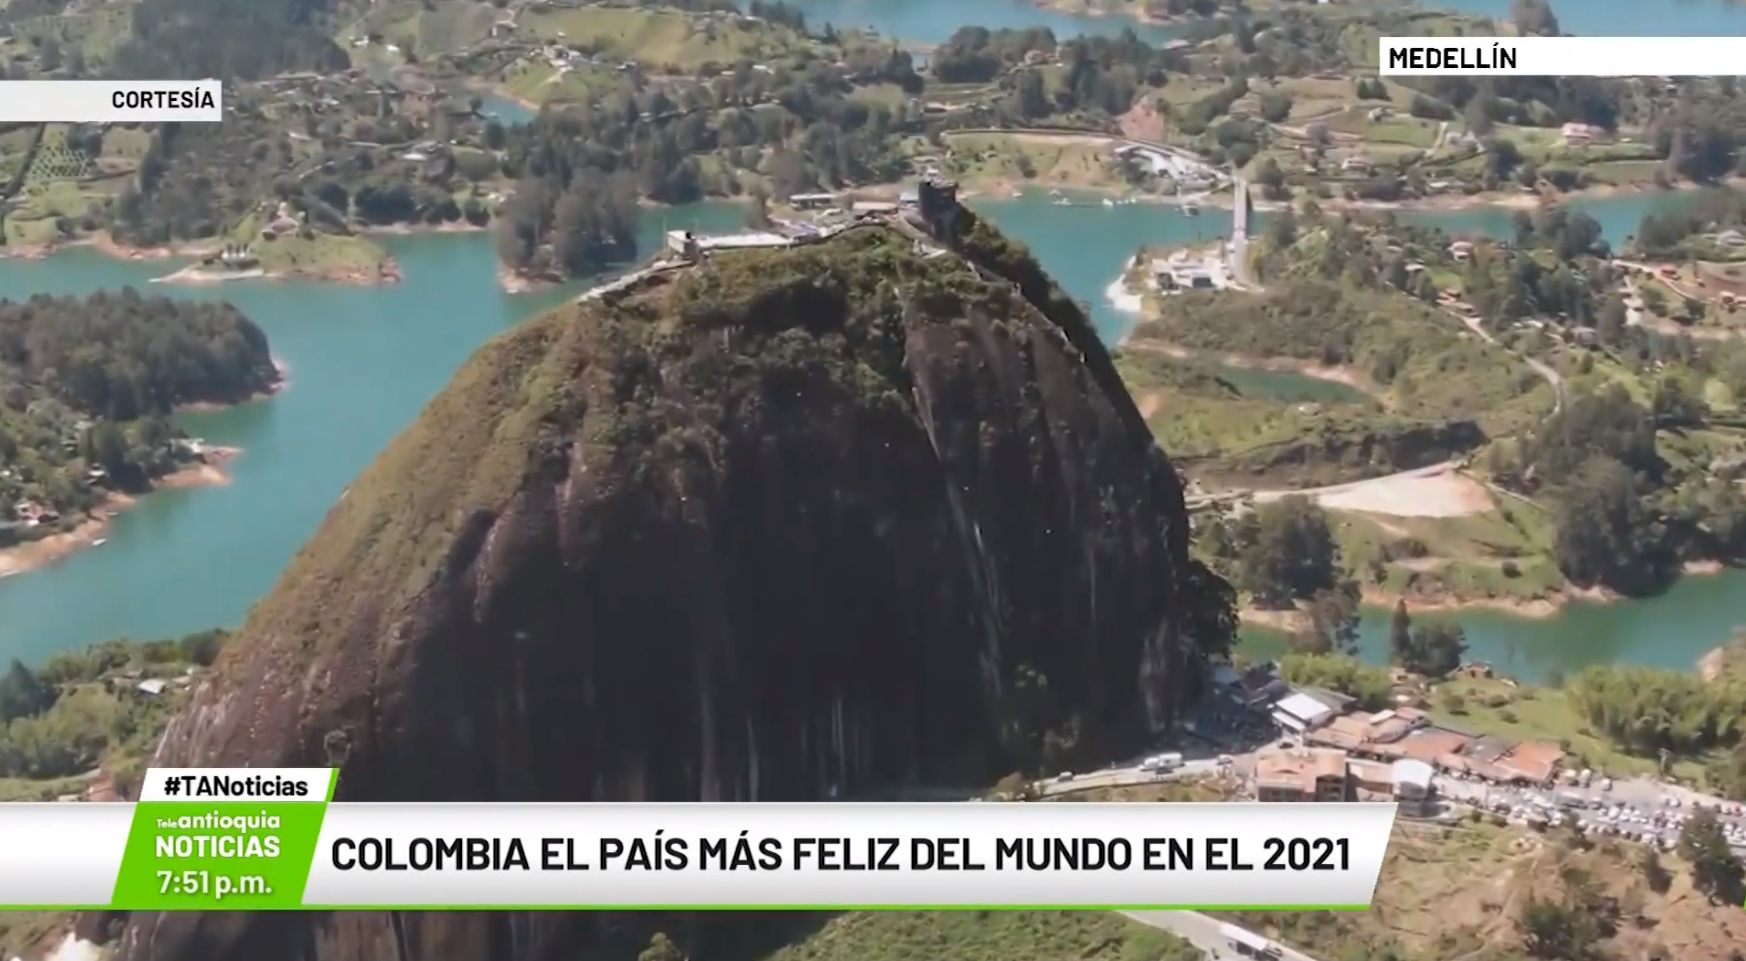 Colombia, el país más feliz del mundo en el 2021